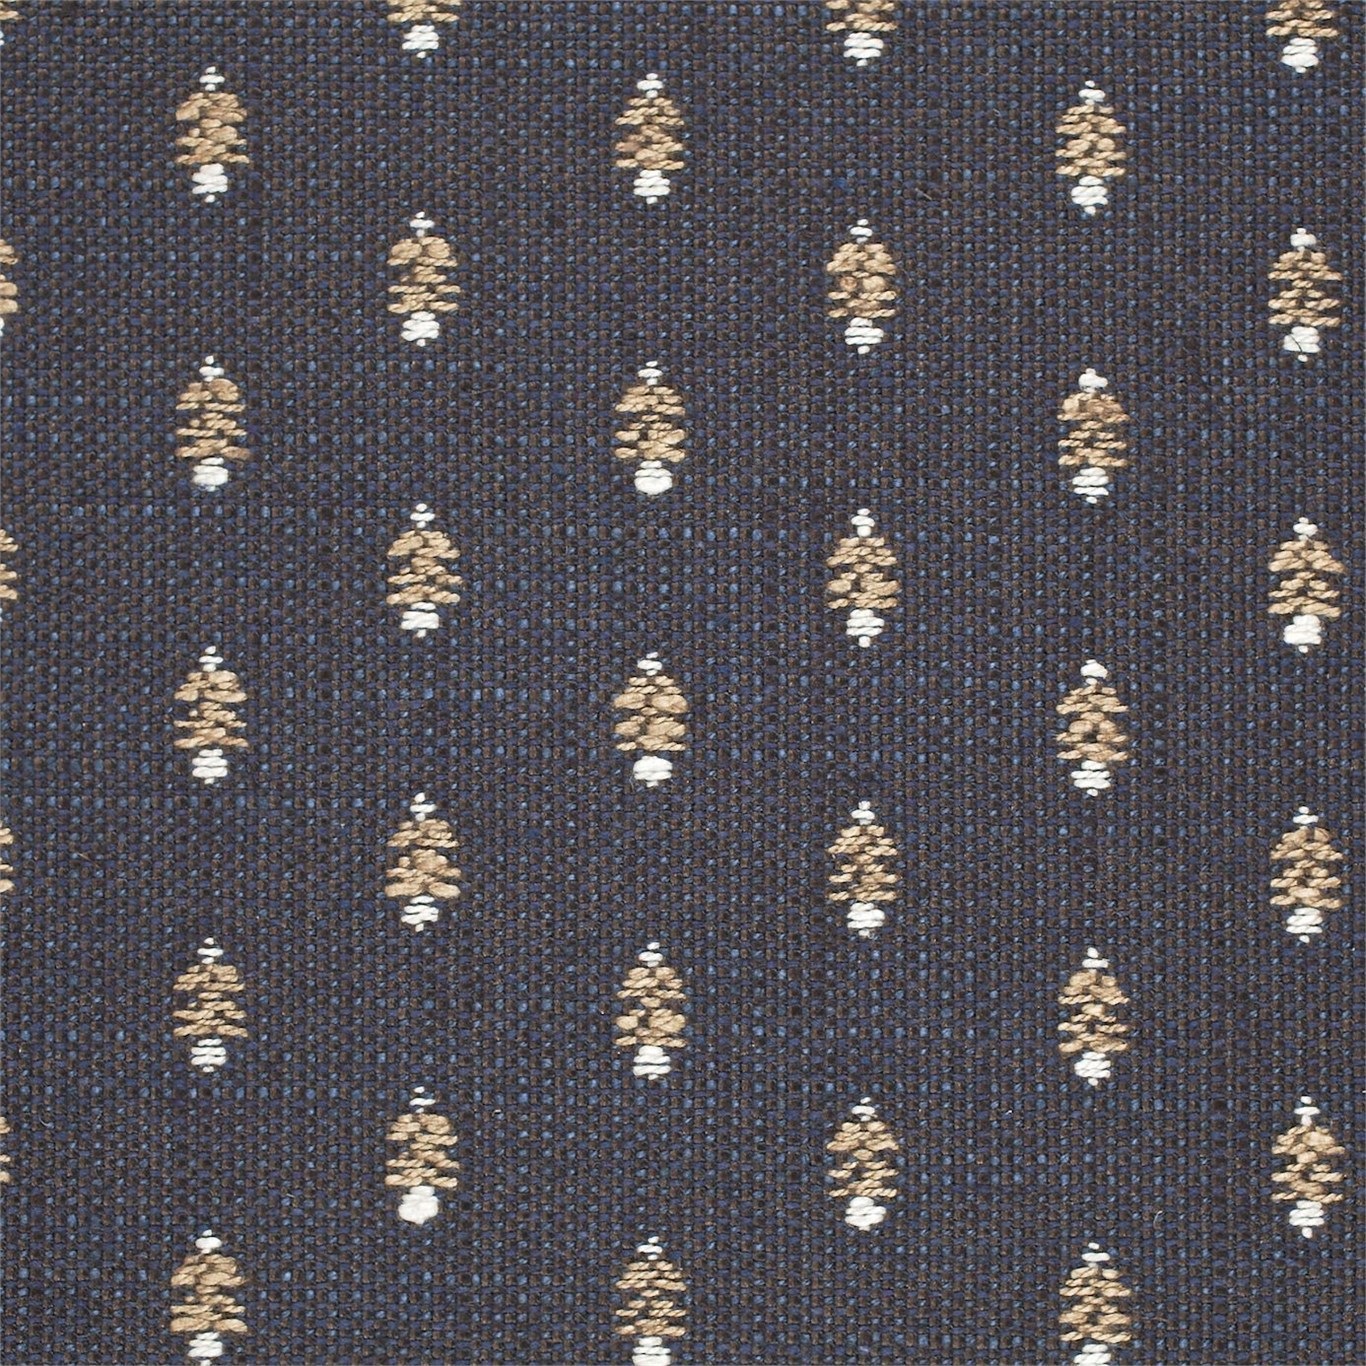 Lydham Indigo Fabric by SAN